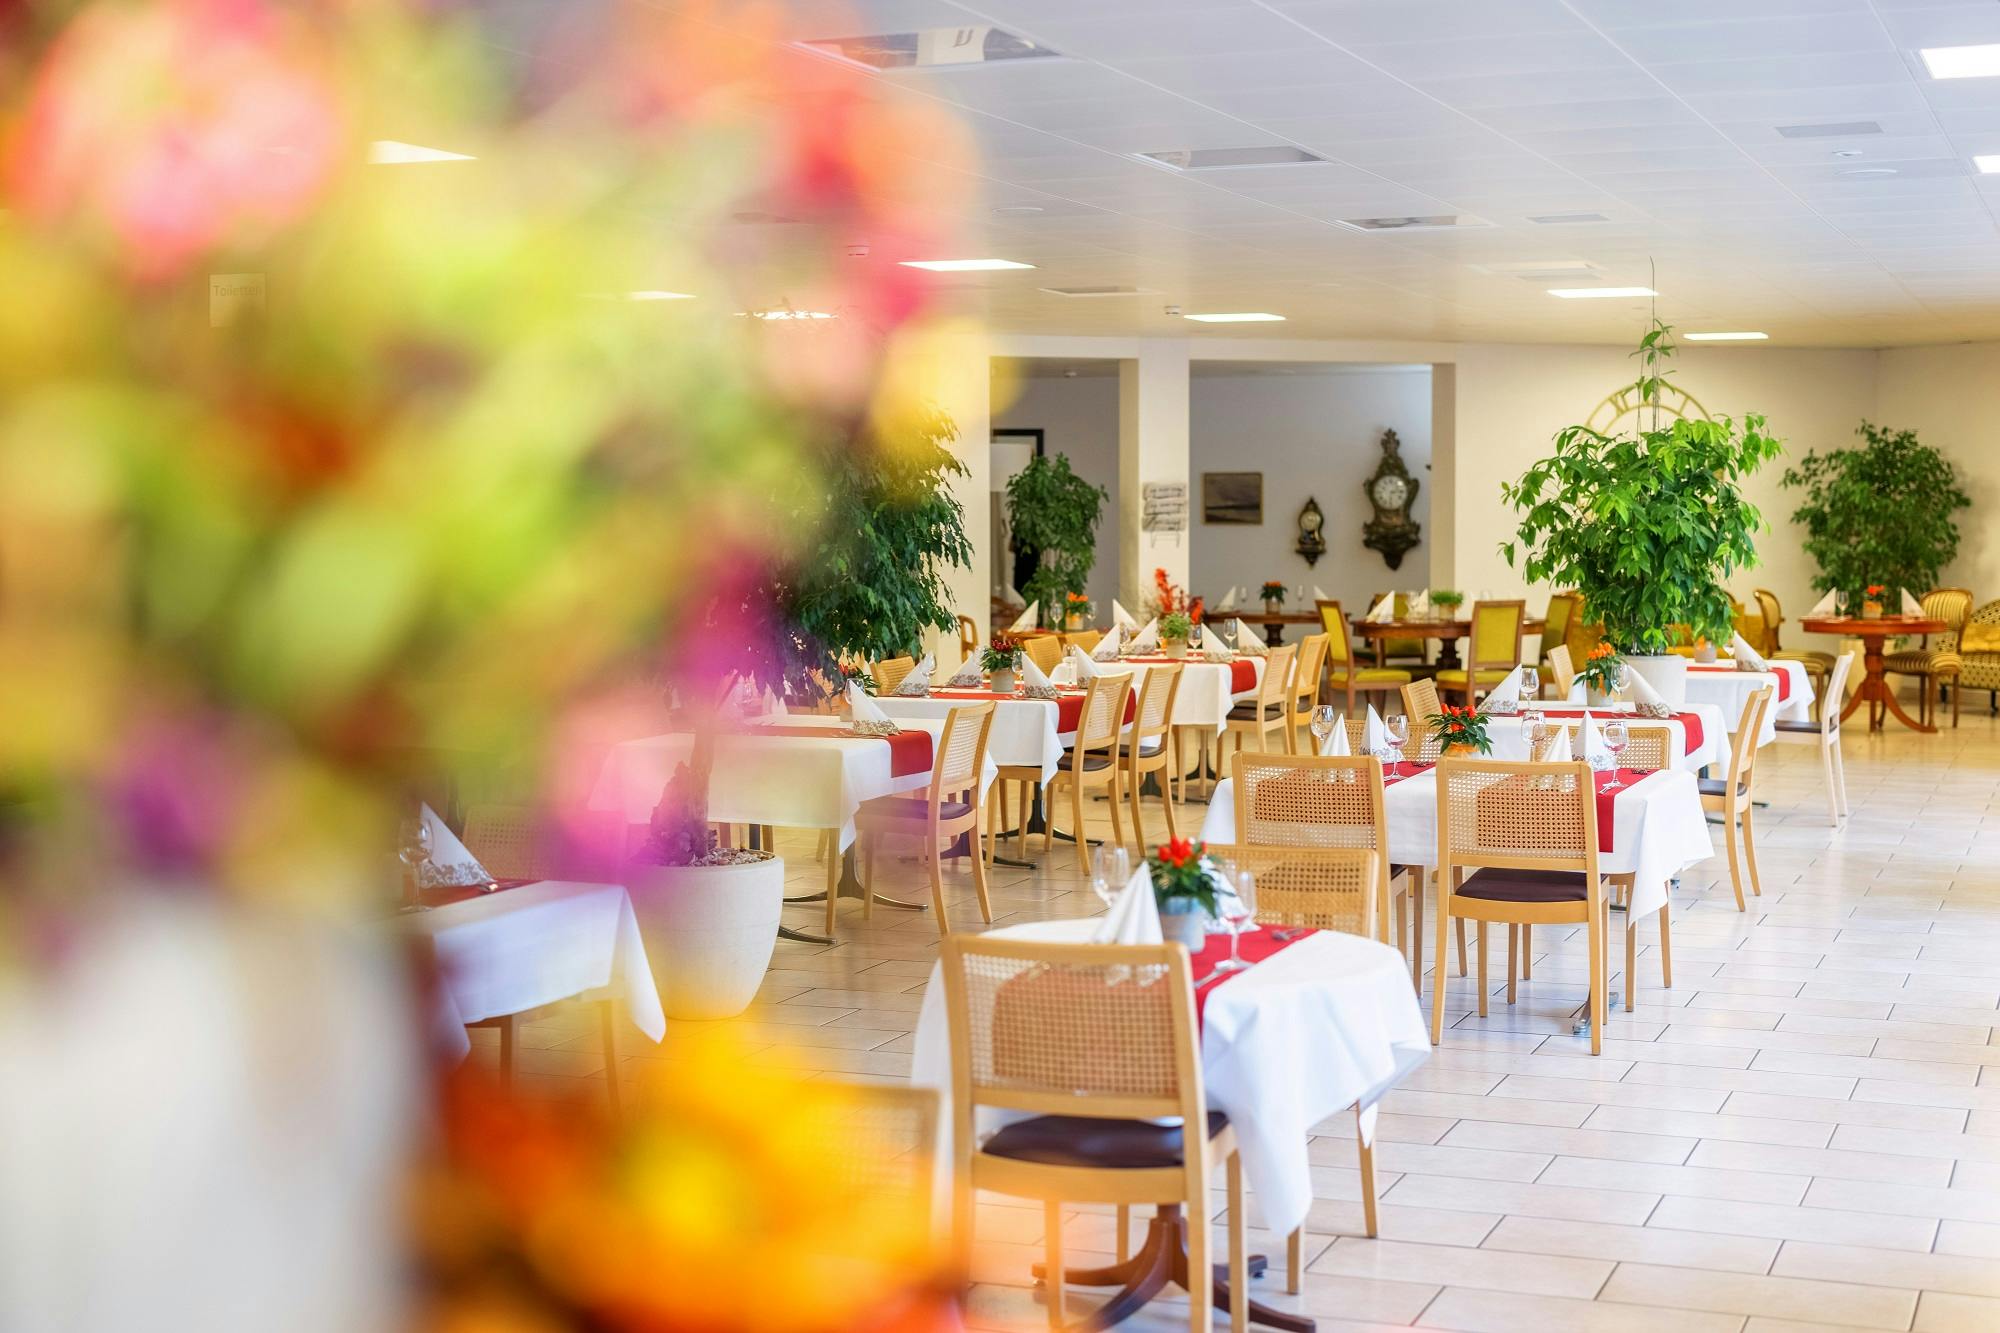 "Helles und elegantes Restaurantinterieur mit gedeckten Tischen und dezenter Dekoration."